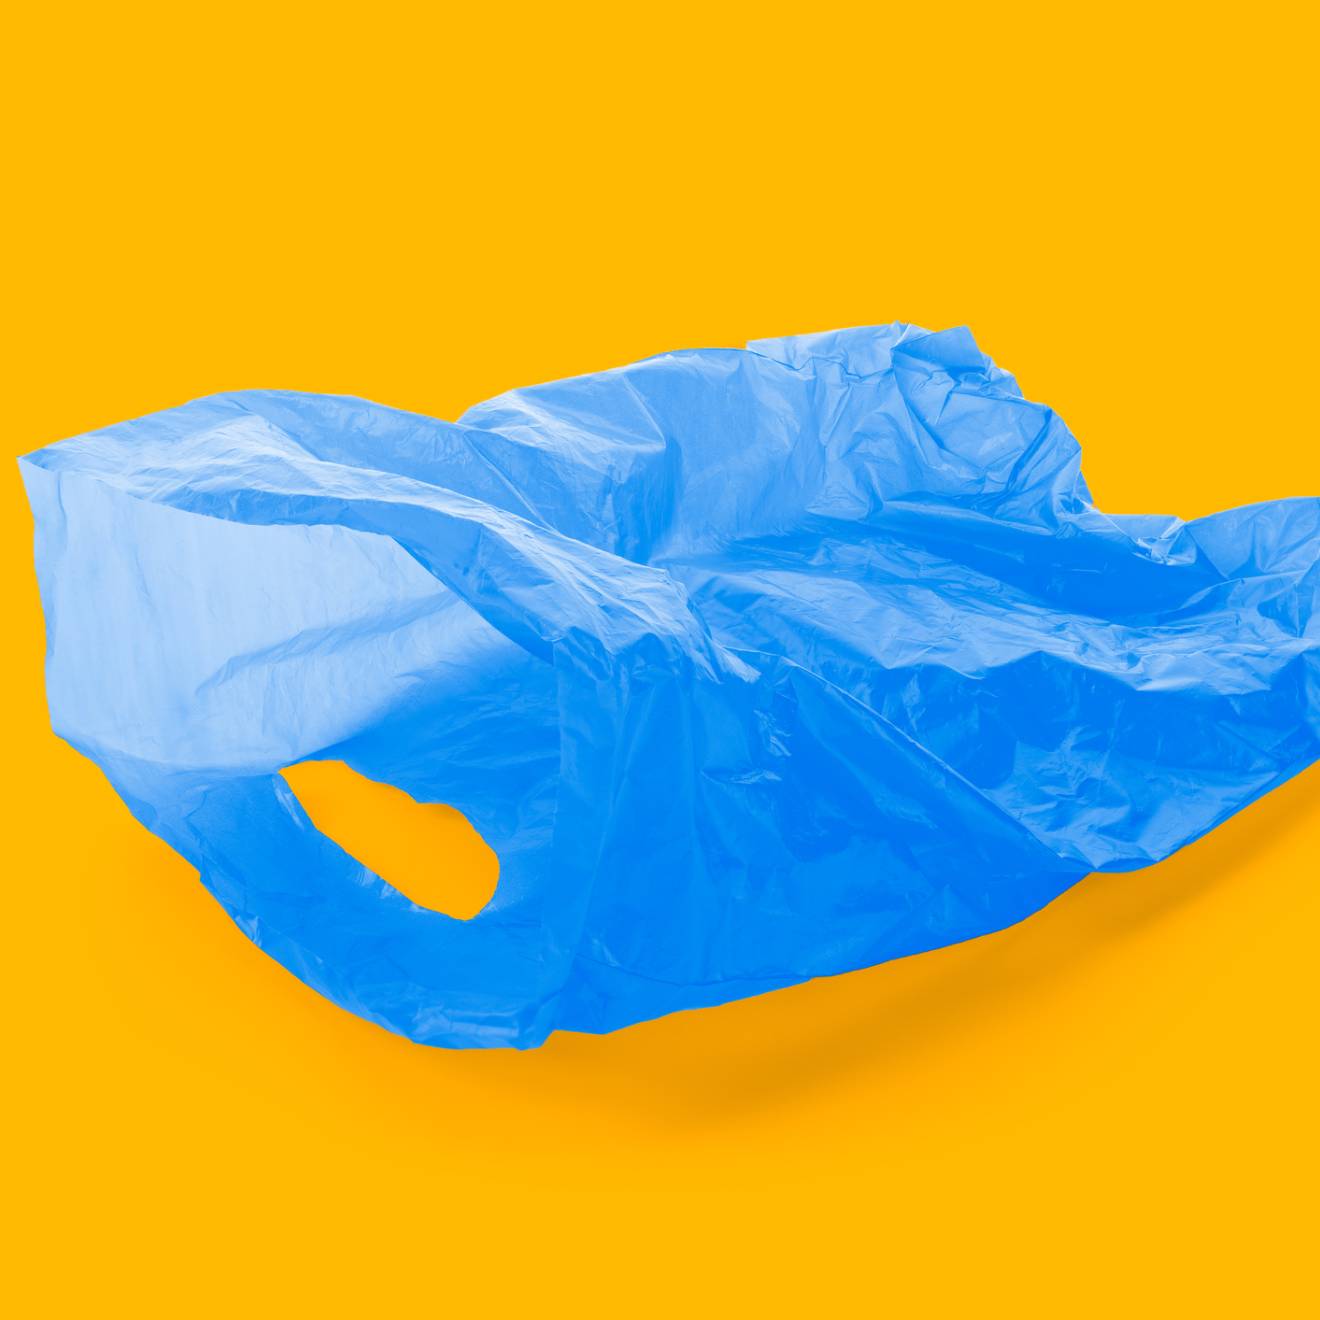 Blue plastic bag on gold background